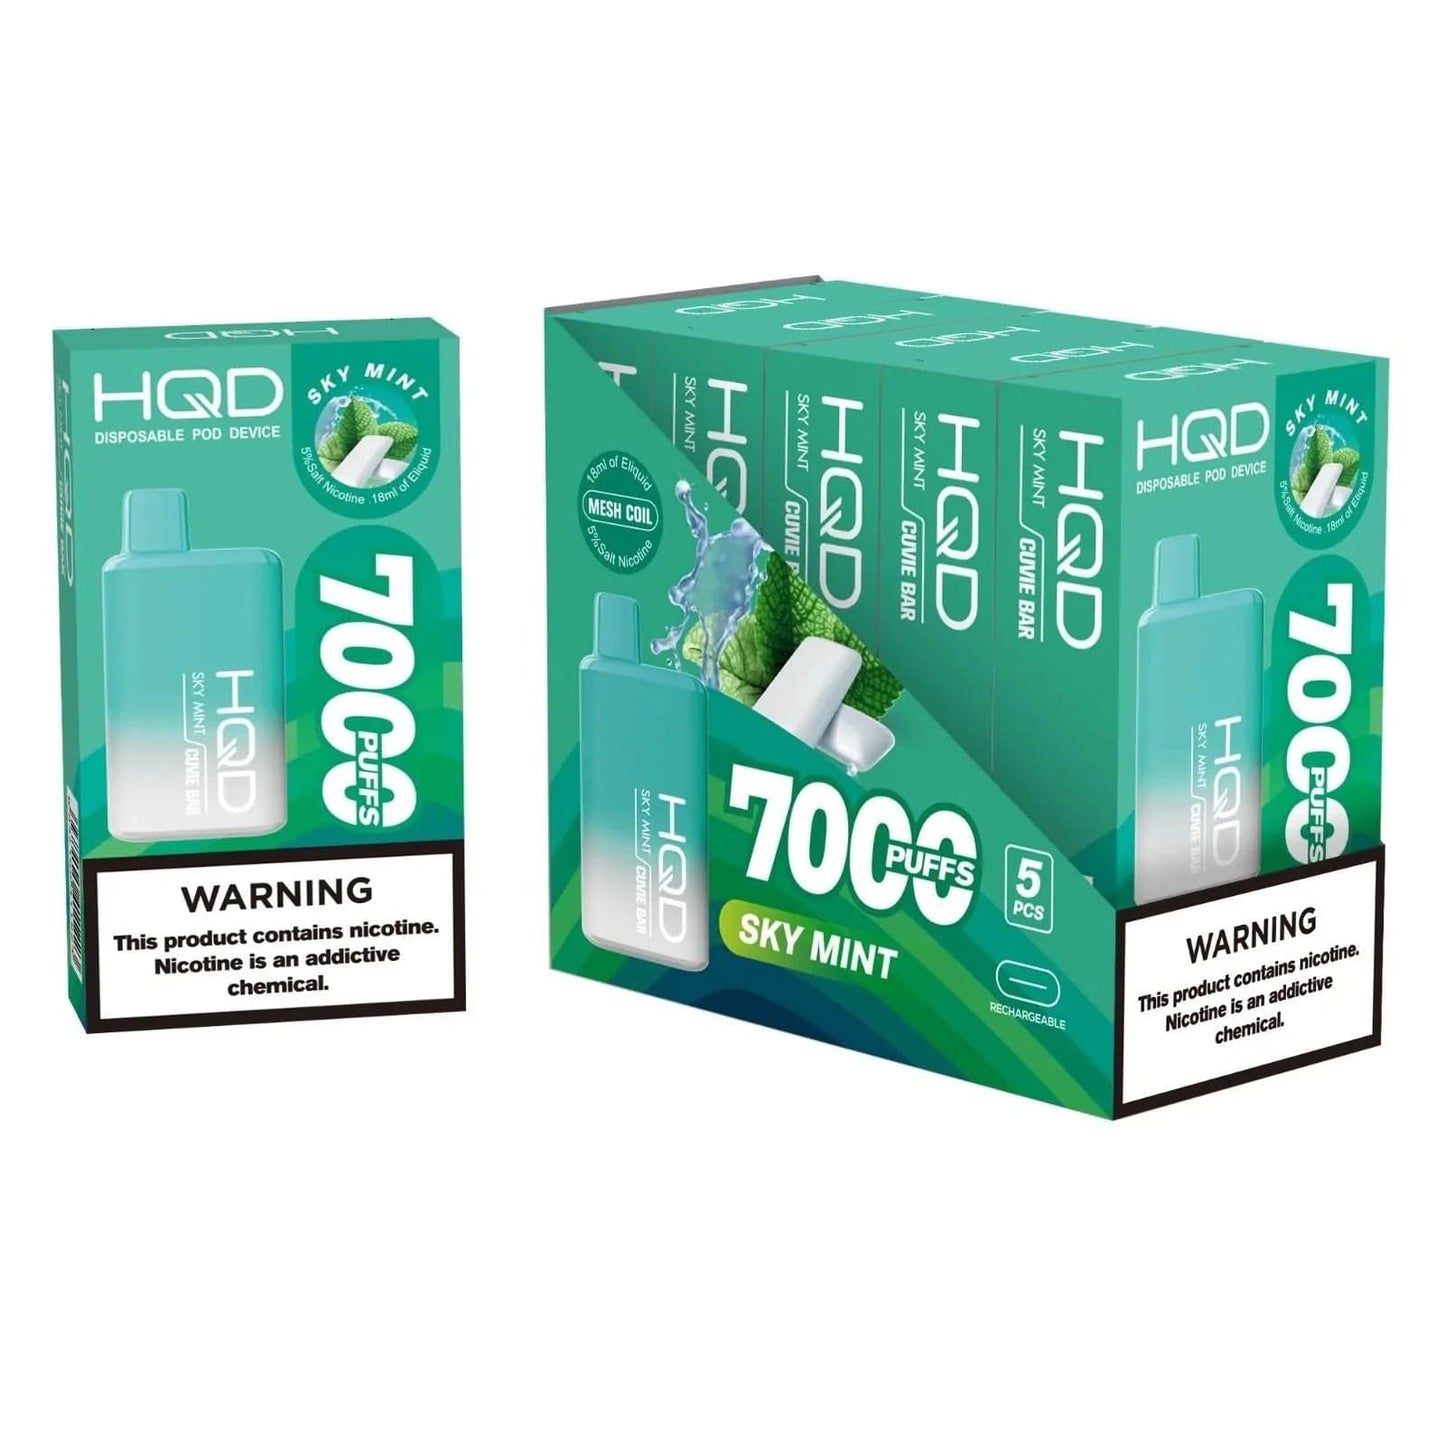 HQD Cuvie Bar 7000 Puffs Disposable Vape - 6 Pack - Vapes Xpress